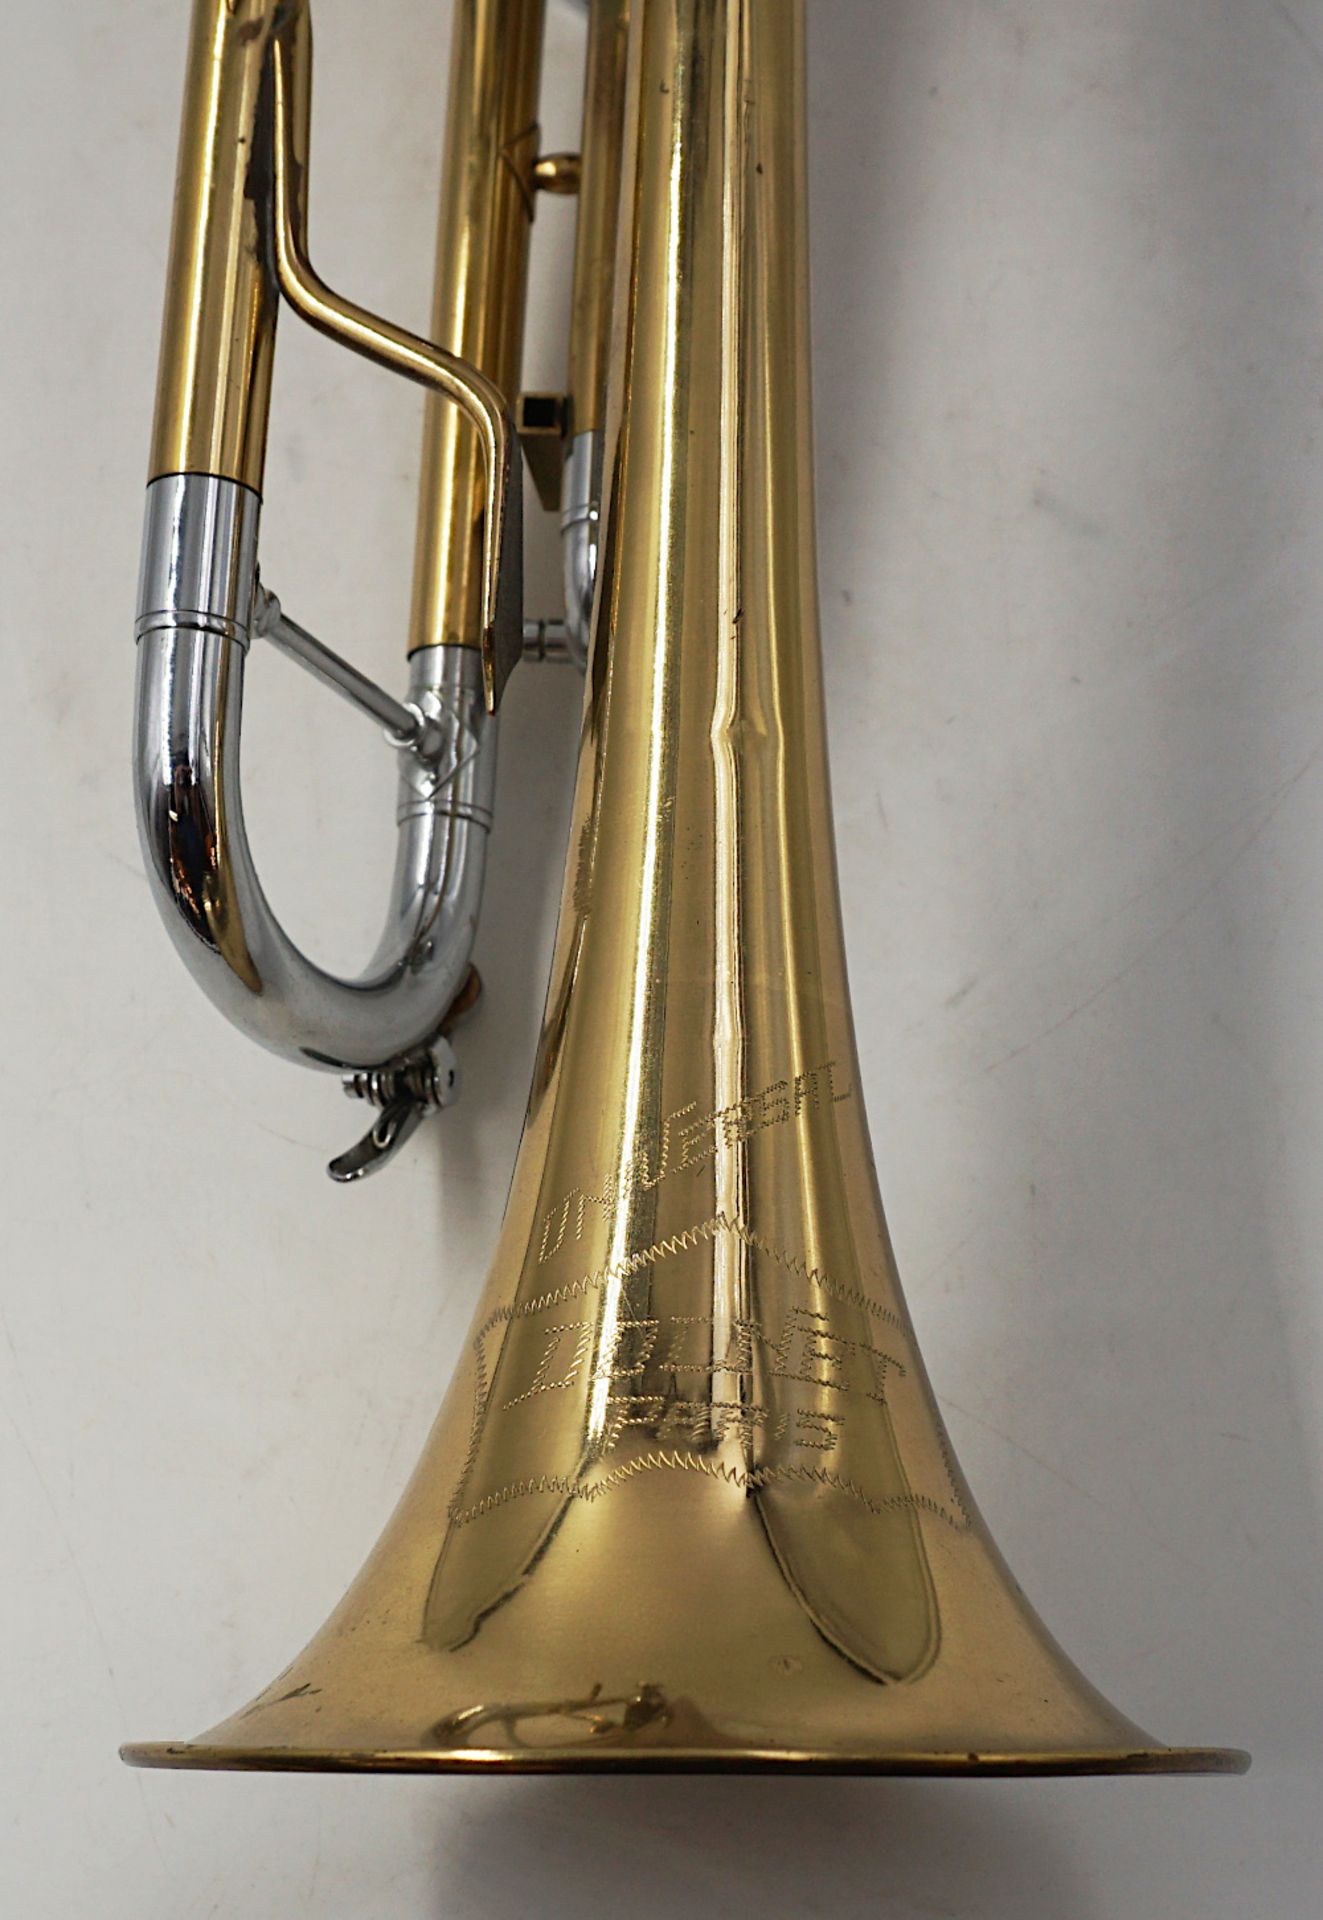 1 Trompete bez. "Universal" DOLNET, Paris Messing/Metall, mit 3 Ventilen, Mundstück, - Bild 5 aus 5